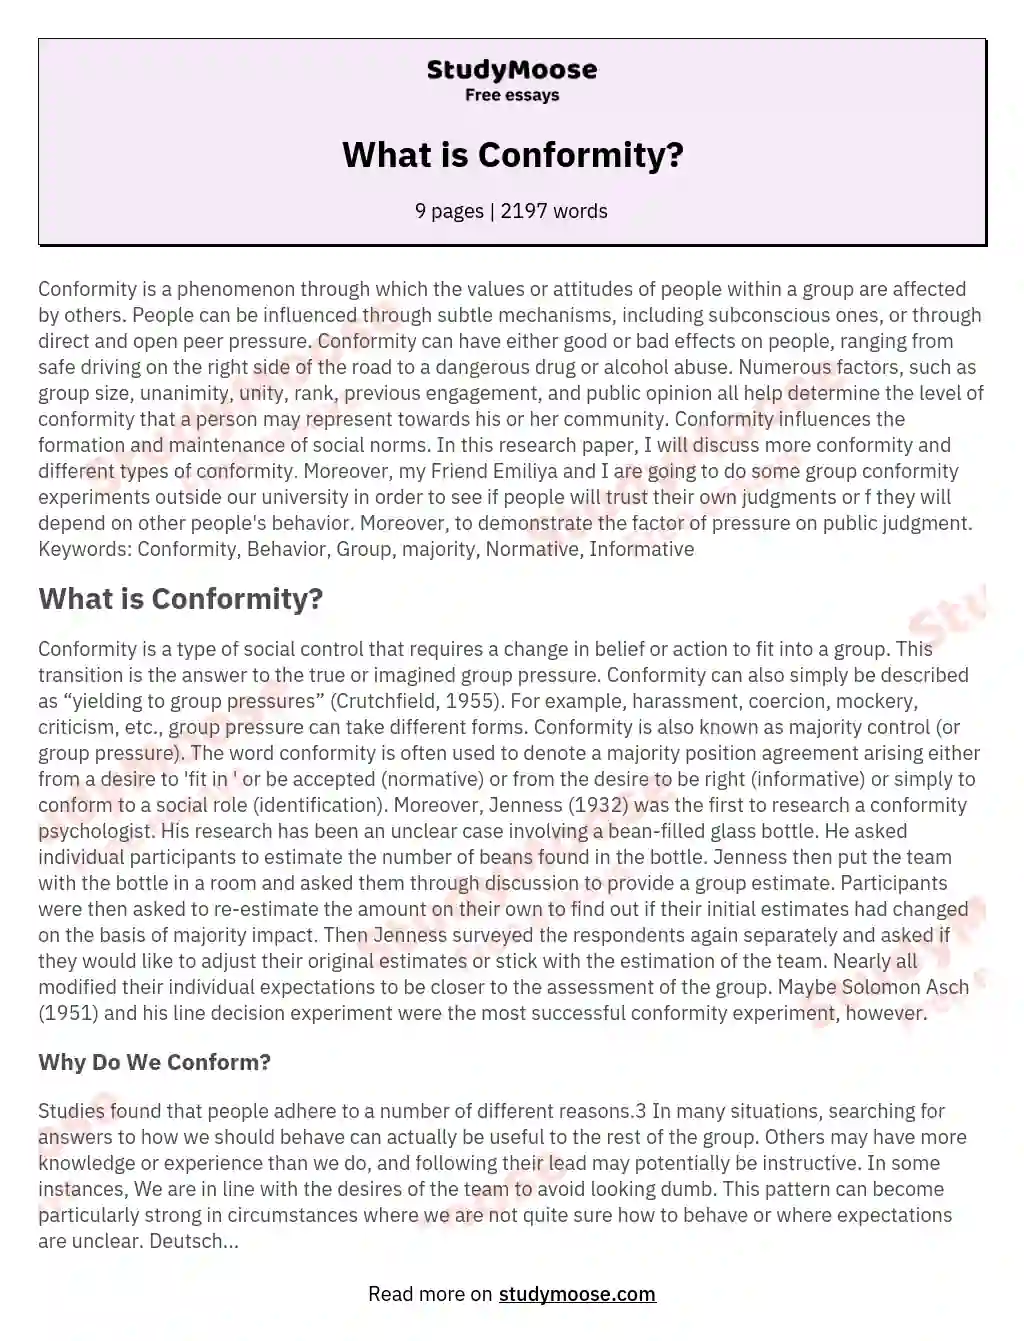 conformity essay topics